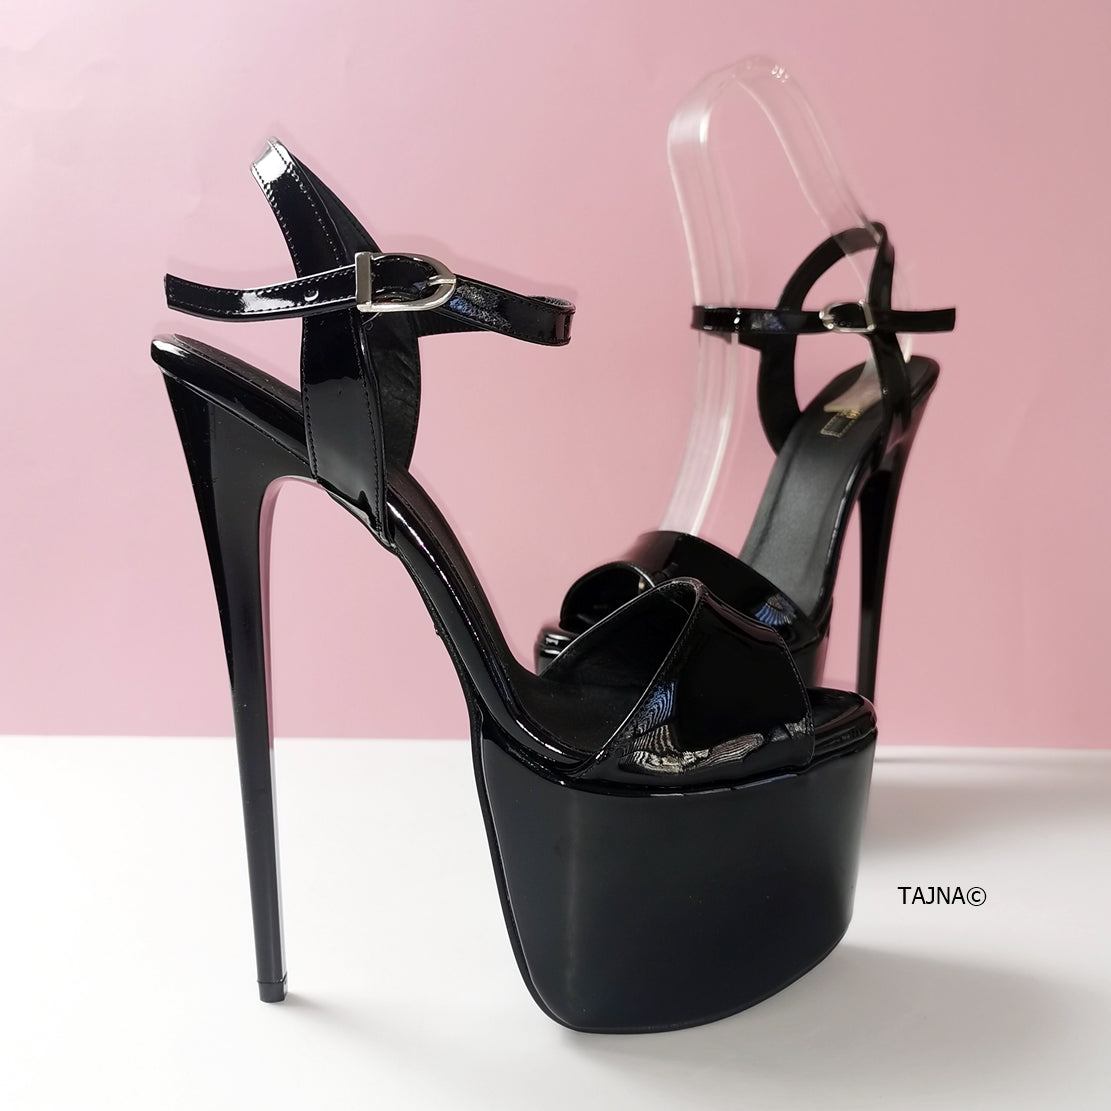 Black Patent Platform Sandals - Tajna Club